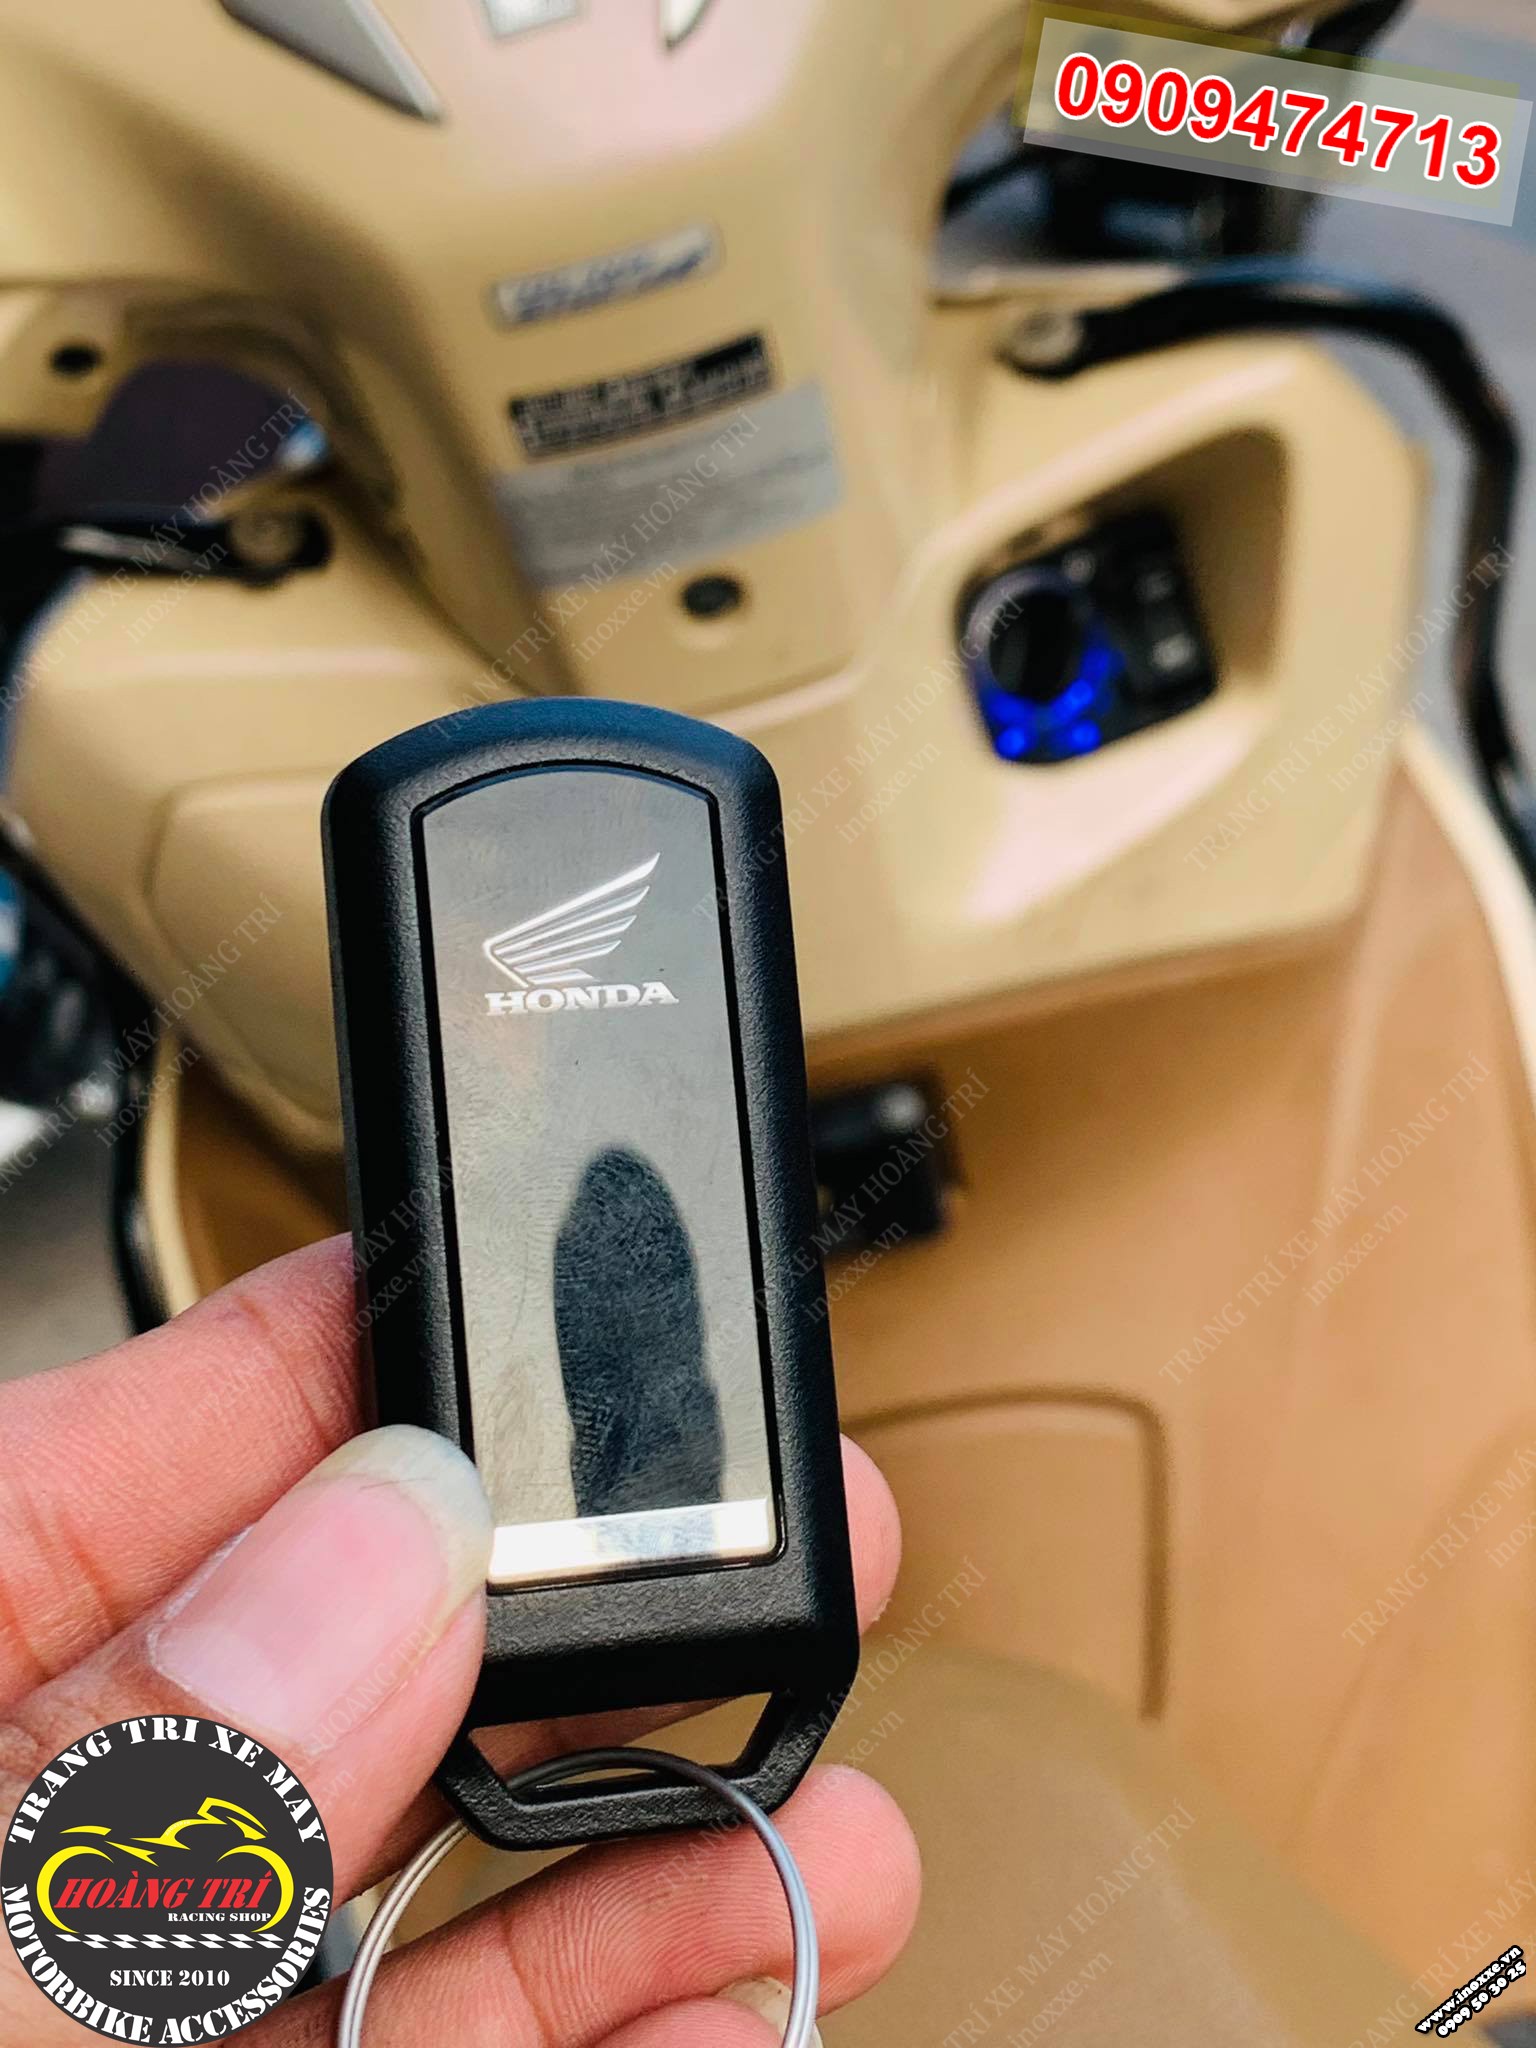 Remote của xe chính hãng Honda